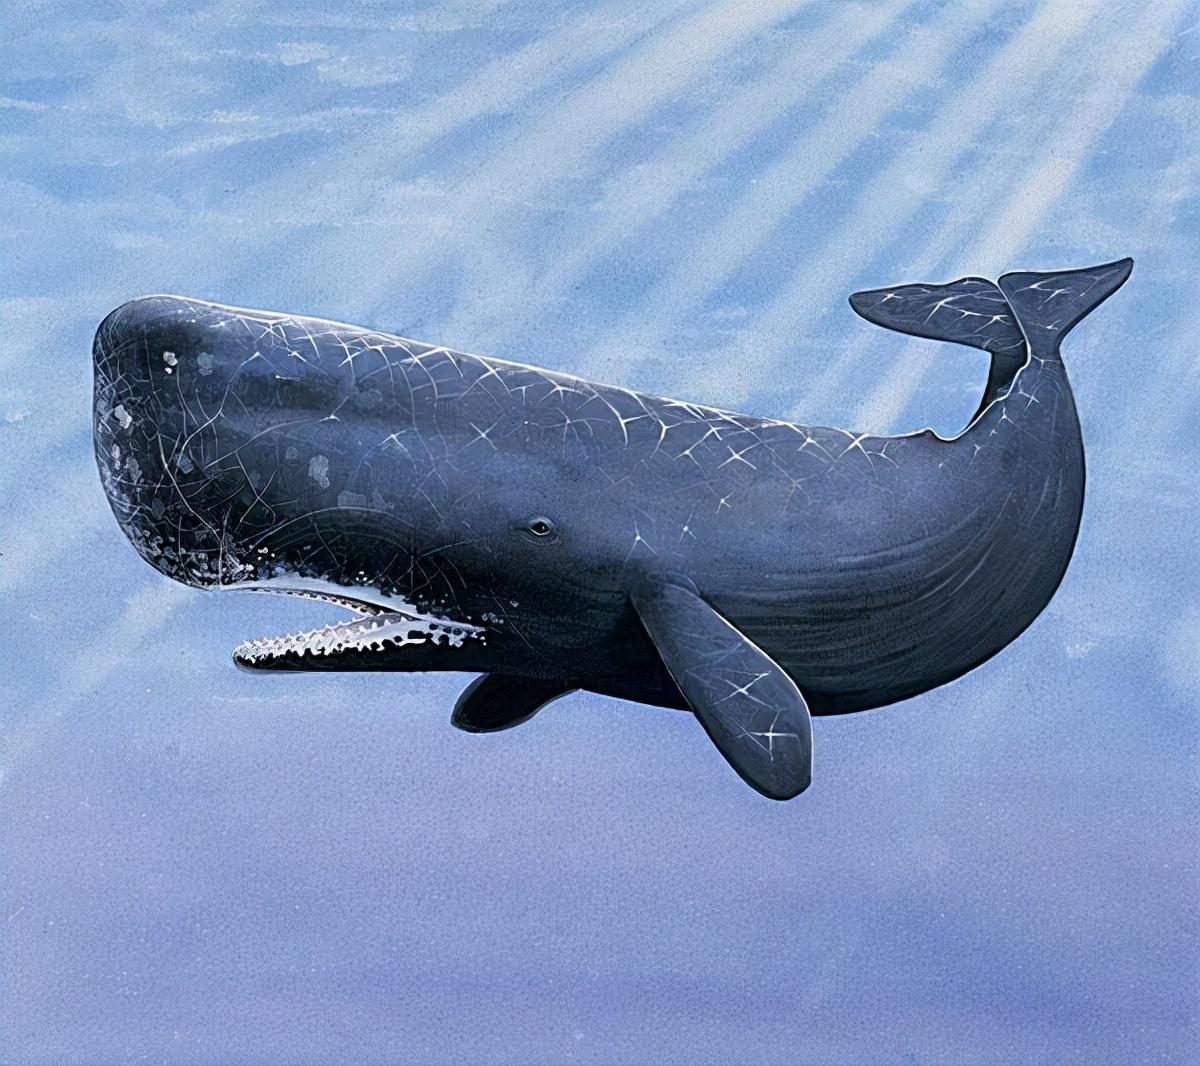 每日壁纸: 在多米尼加罗索海岸附近的抹香鲸 - 自习